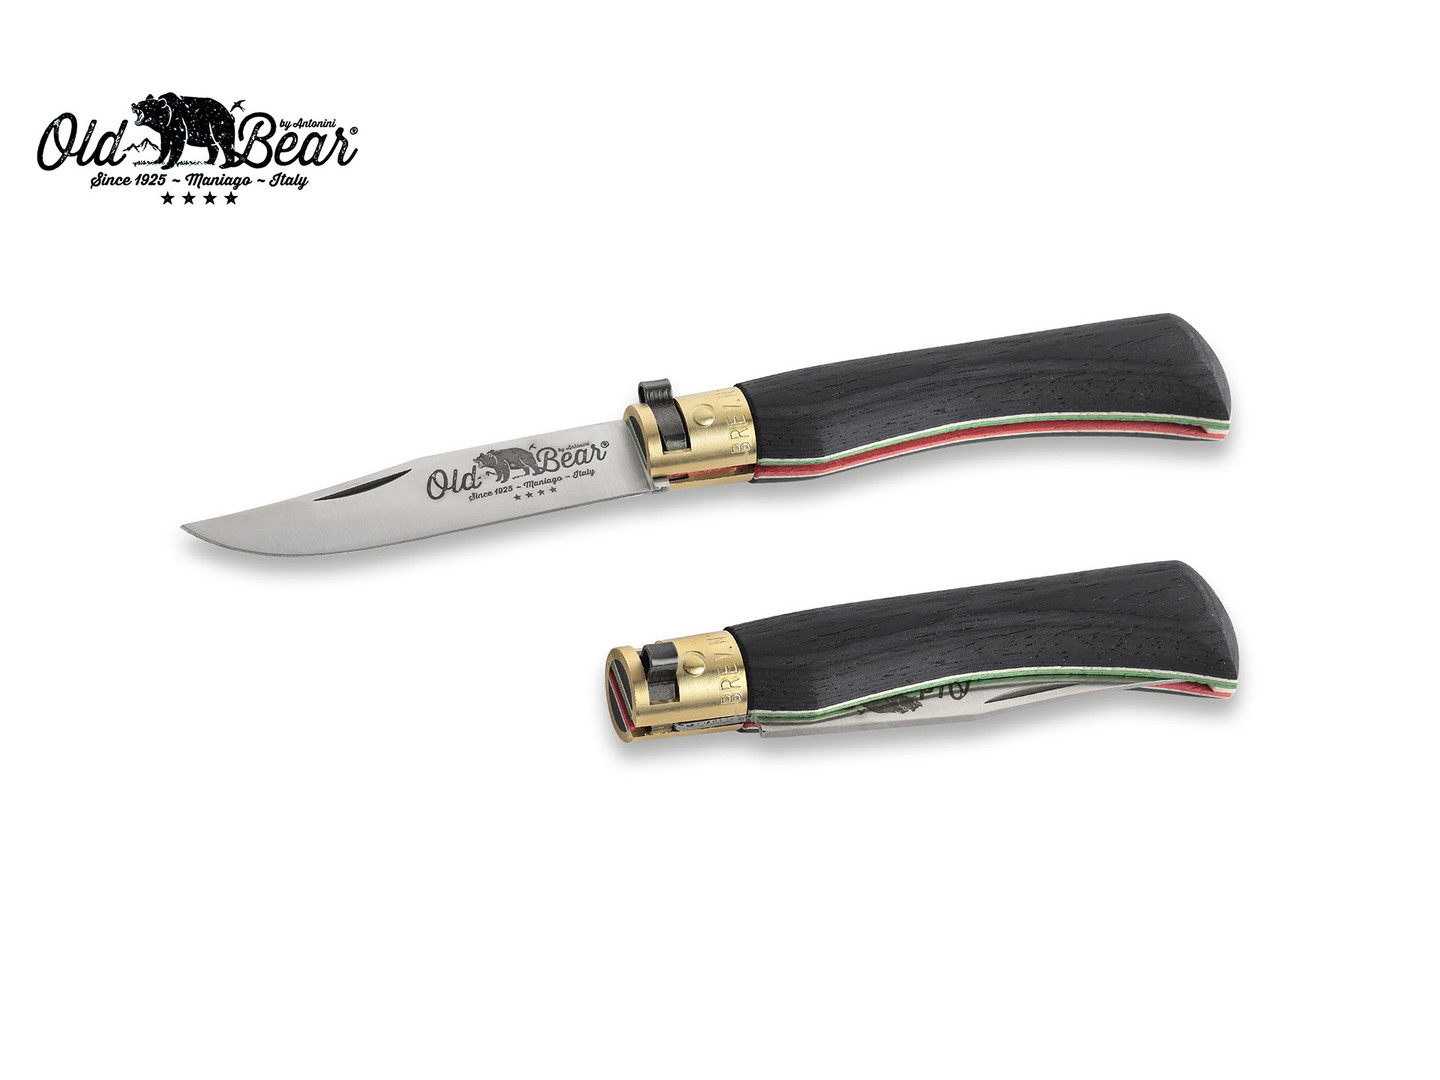 Нож Antonini Old Bear World M 9307/19_MT нержавеющая сталь AISI 420 рукоять ламинат черного дерева с флагом Италии, латунь